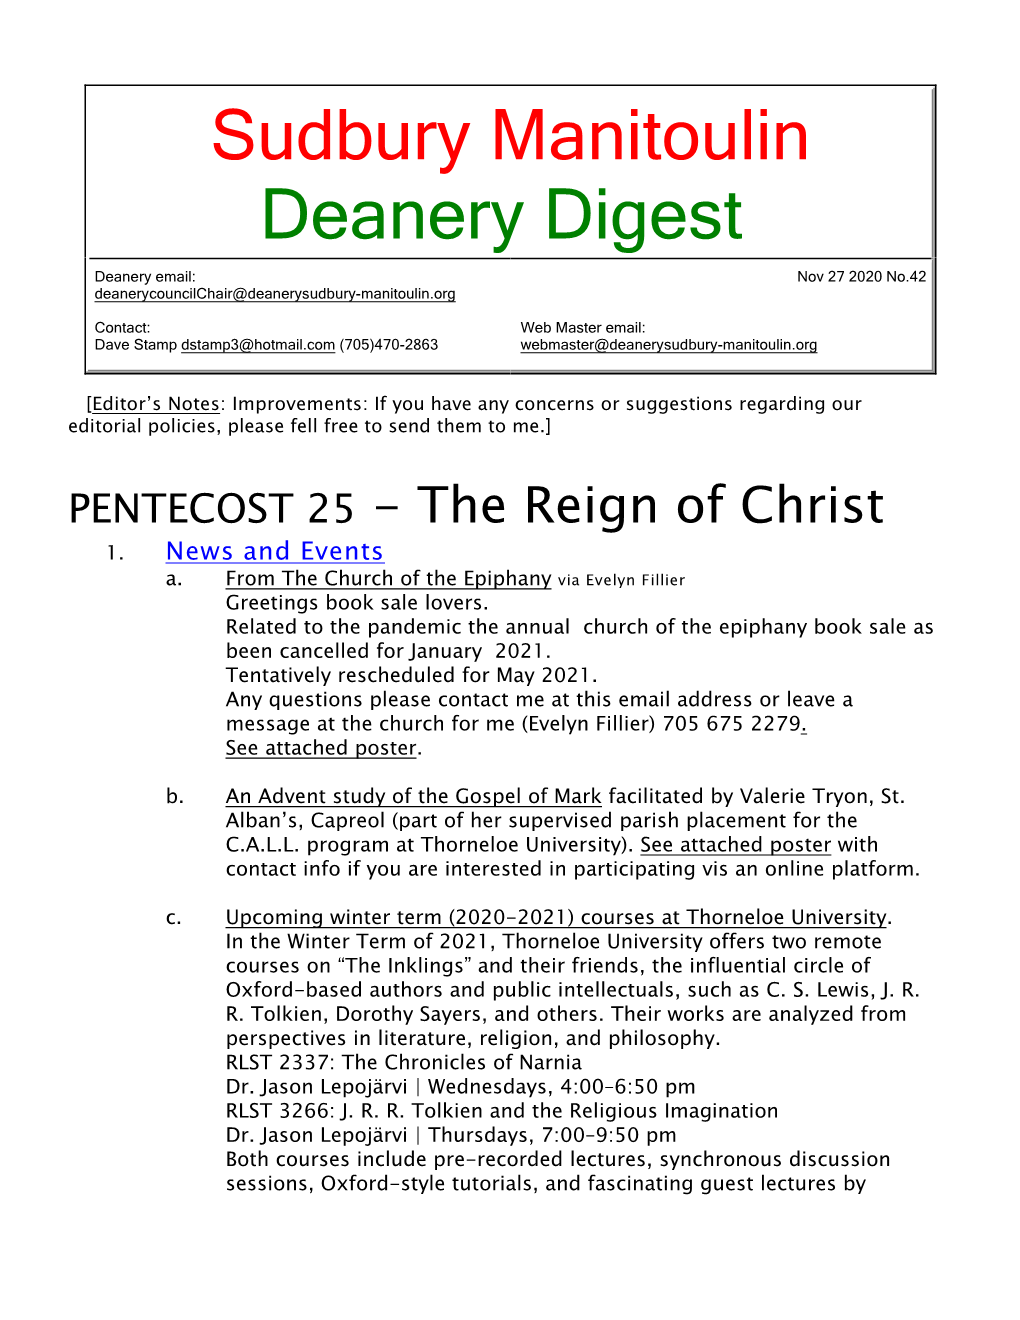 27 November 2020 Deanery Newsletter